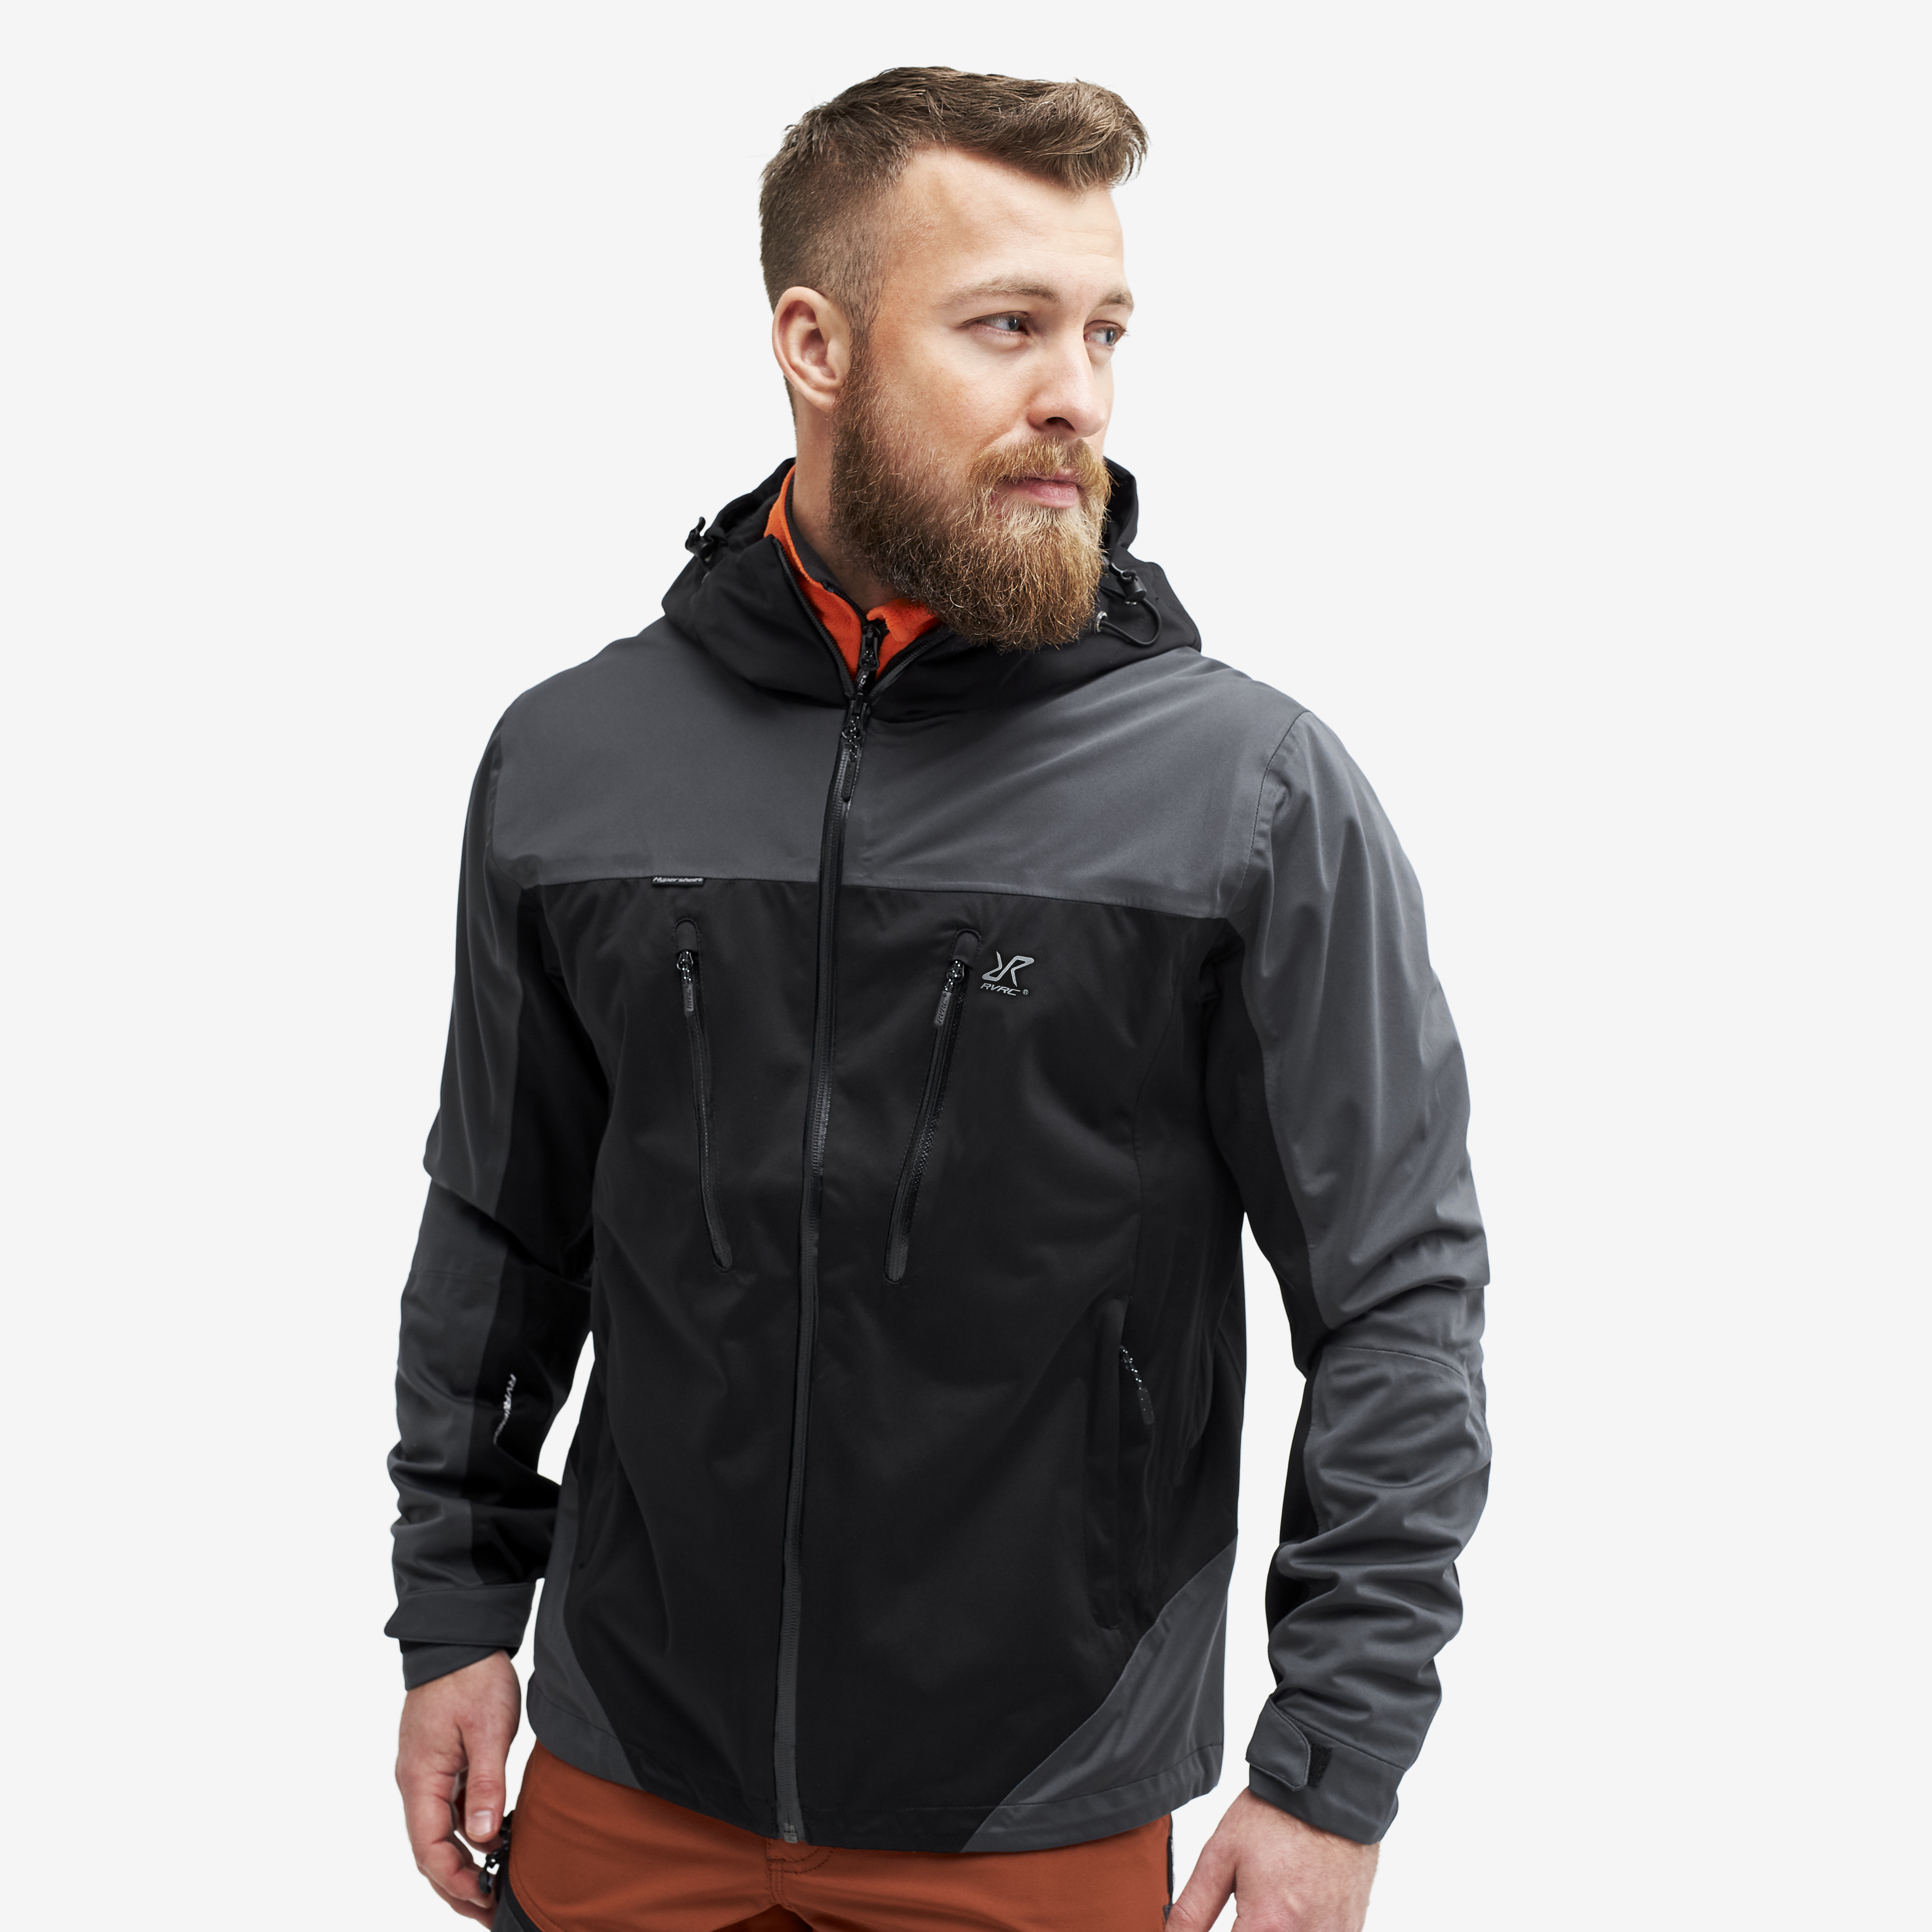 RevolutionRace Silence Proshell Jacket Veste pour homme veste ventilée et imperméable pour la randonnée et les Autres activités de Plein air